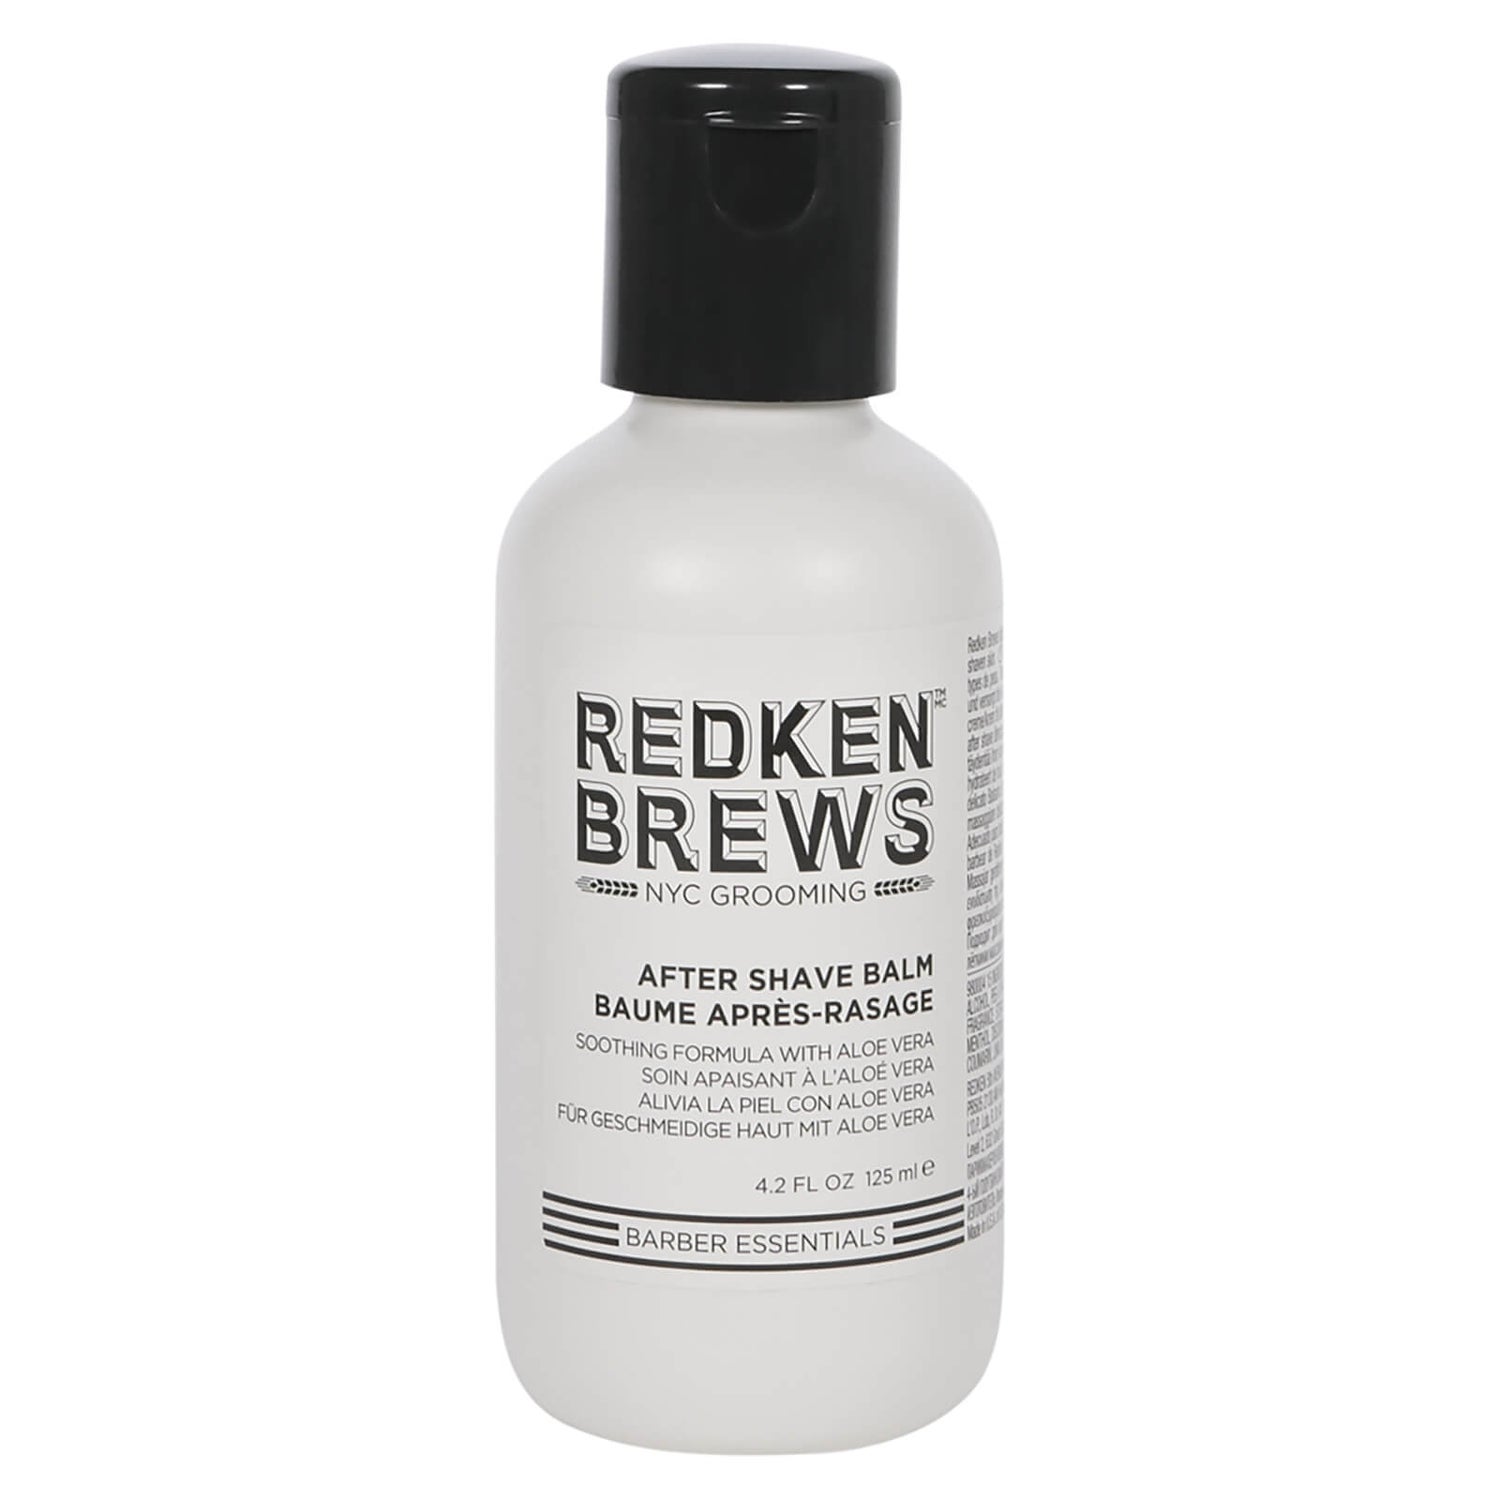 Redken Brews After Shave Balm 4.2 fl oz.